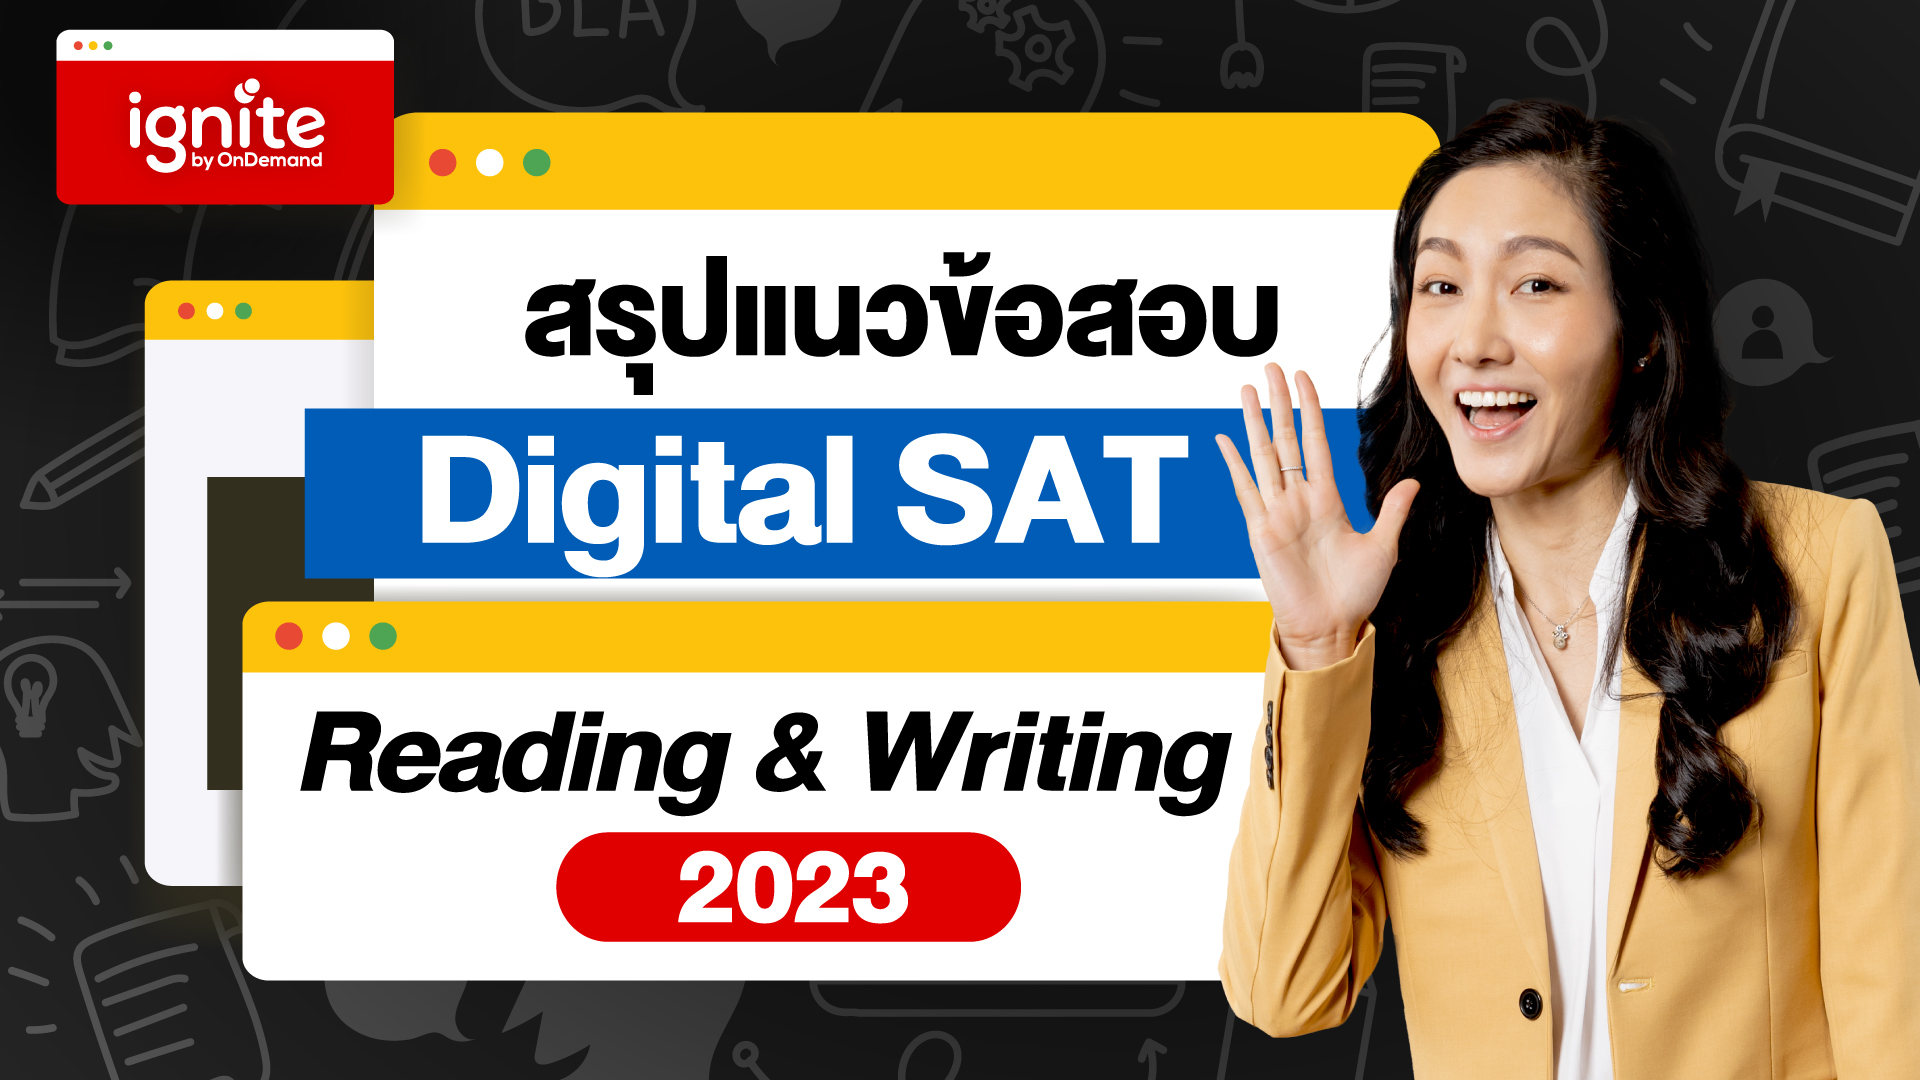 สรุปแนวข้อสอบ Digital SAT Reading and Wrting 2023 - ignite by OnDemand